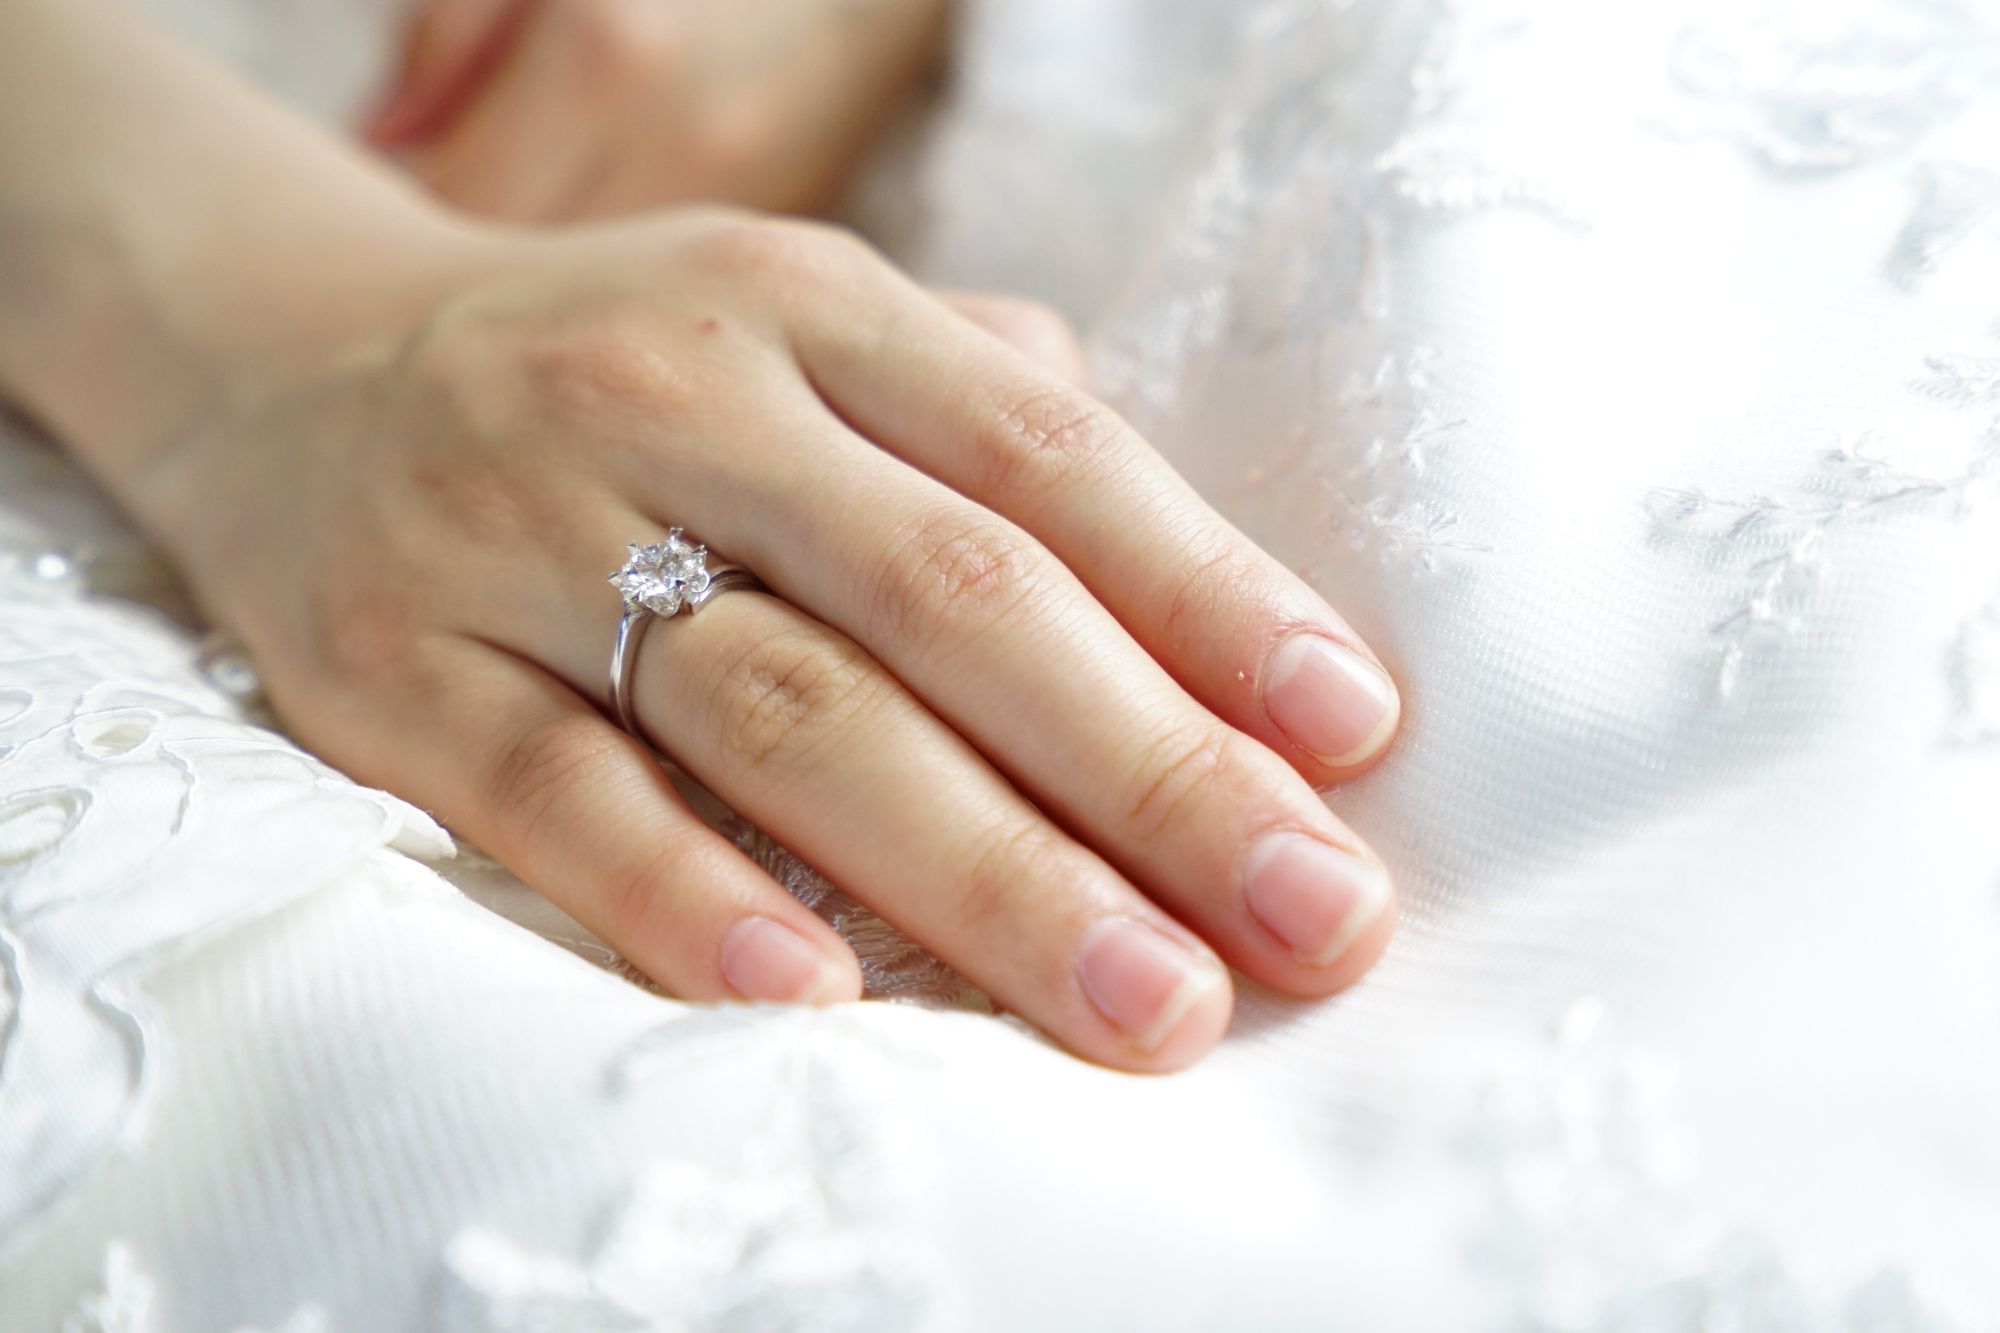 Foto de mão de noiva sob vestido de casamento. A mulher usa uma aliança no dedo.